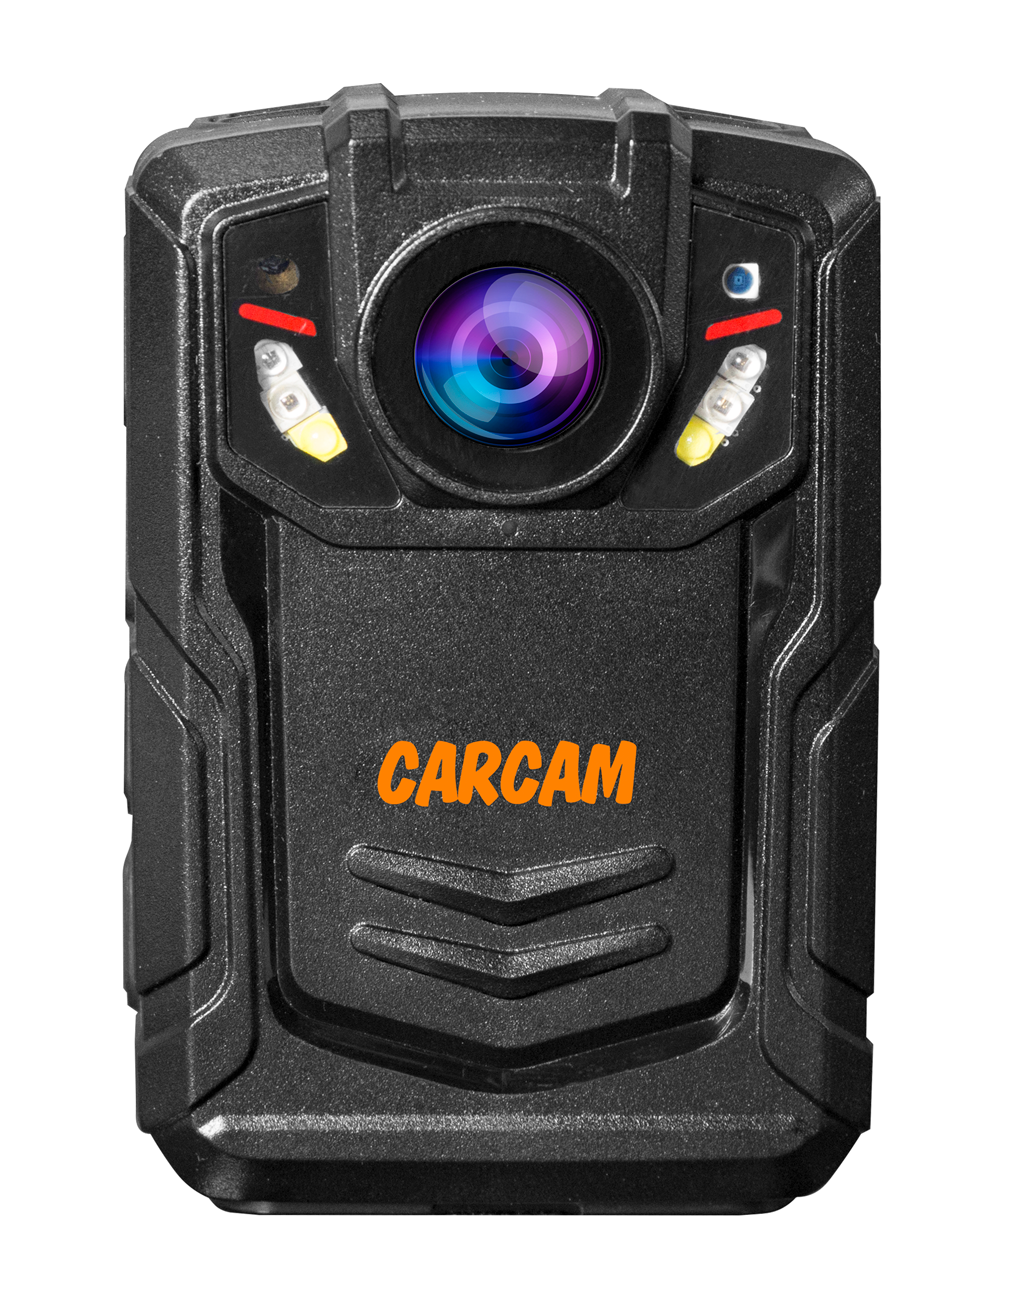 Персональный Quad HD видеорегистратор  CARCAM COMBAT 2S/4G 256Gb персональный quad hd видеорегистратор carcam combat 2s 4g 128gb